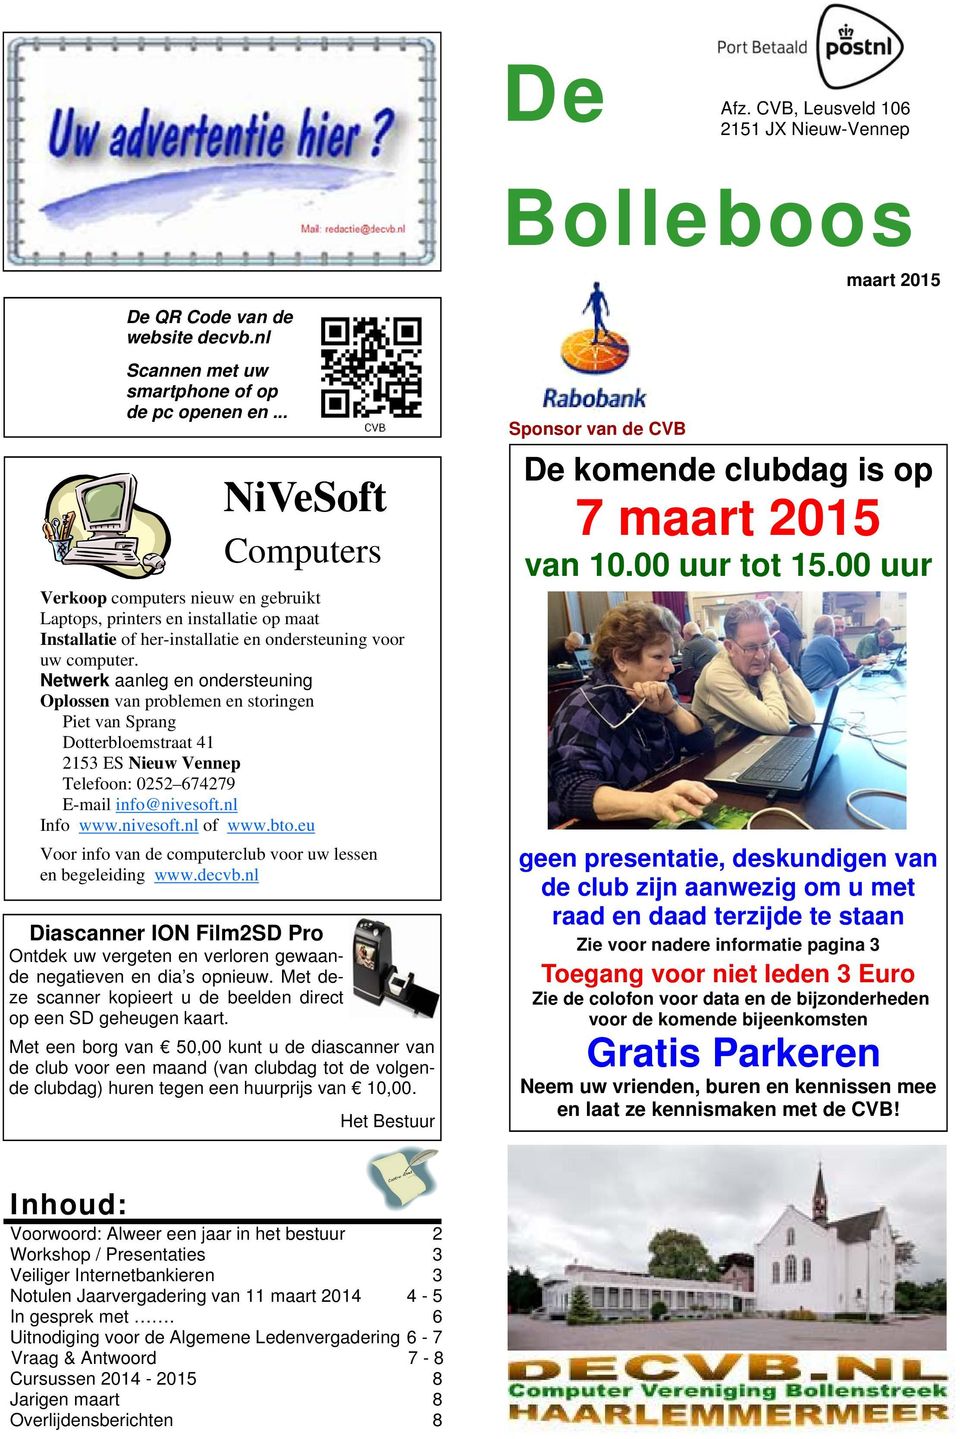 Netwerk aanleg en ondersteuning Oplossen van problemen en storingen Piet van Sprang Dotterbloemstraat 41 2153 ES Nieuw Vennep Telefoon: 0252 674279 E-mail info@nivesoft.nl Info www.nivesoft.nl of www.